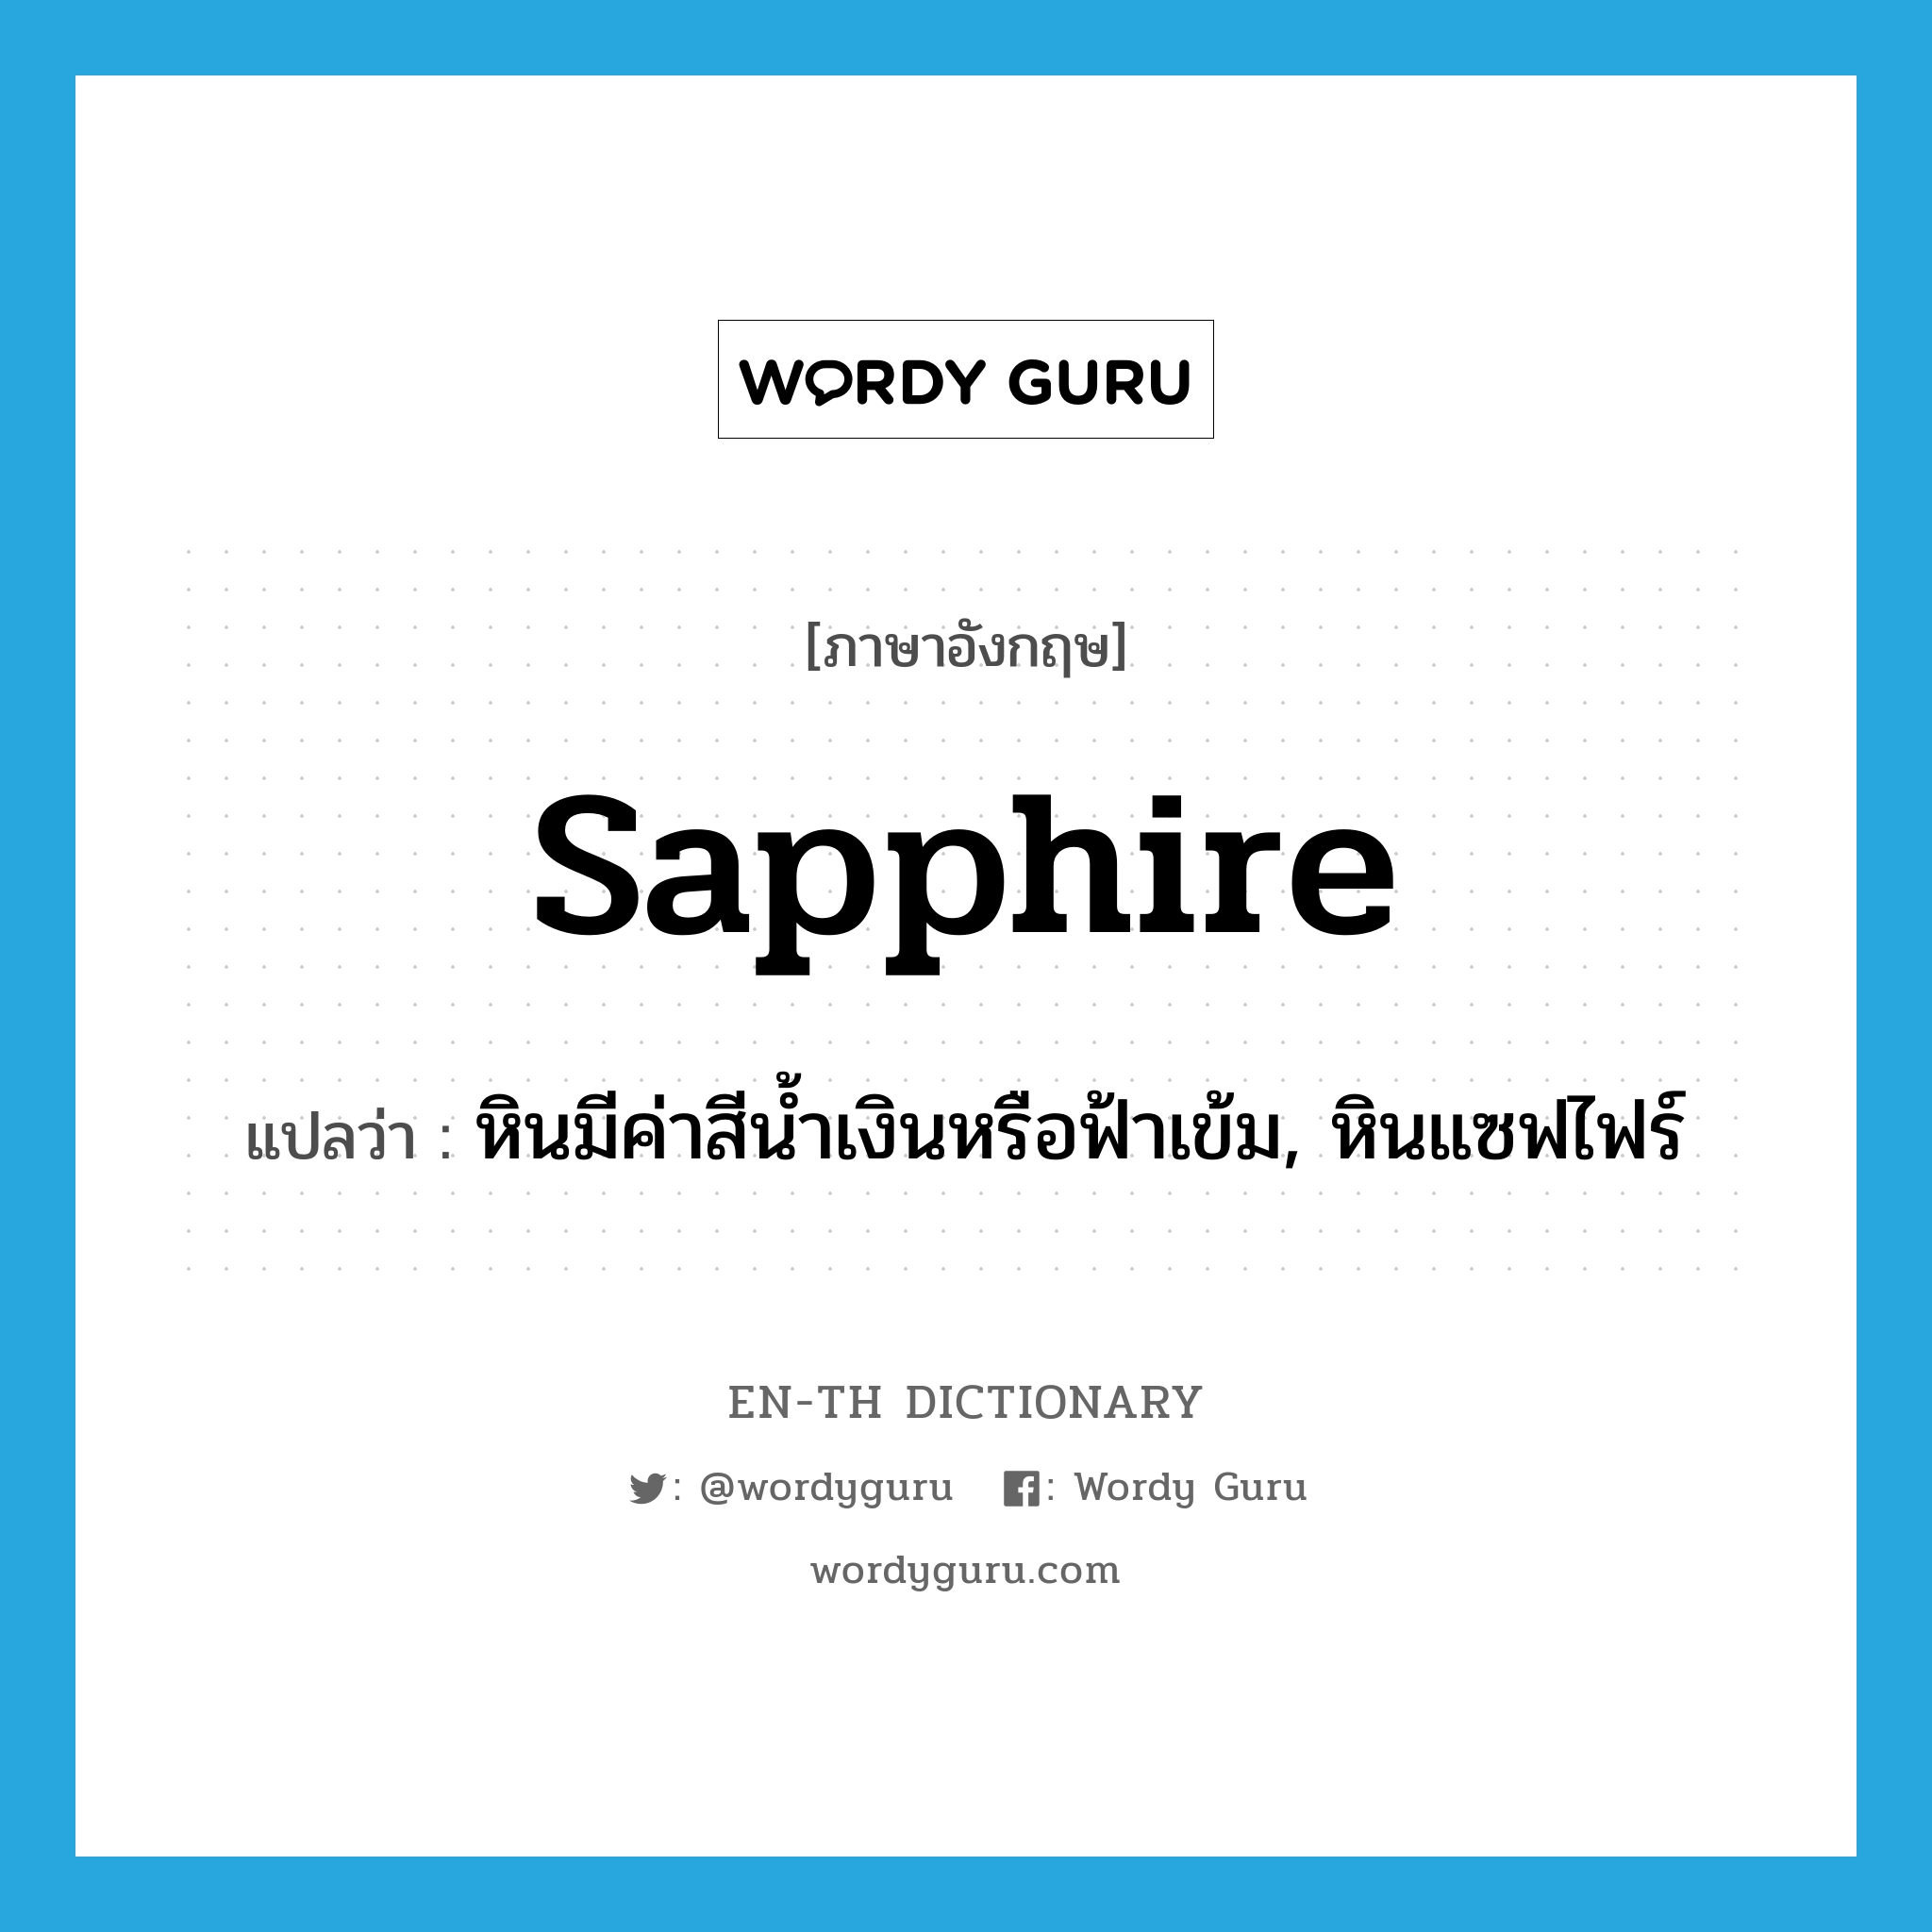 sapphire แปลว่า?, คำศัพท์ภาษาอังกฤษ sapphire แปลว่า หินมีค่าสีน้ำเงินหรือฟ้าเข้ม, หินแซฟไฟร์ ประเภท N หมวด N